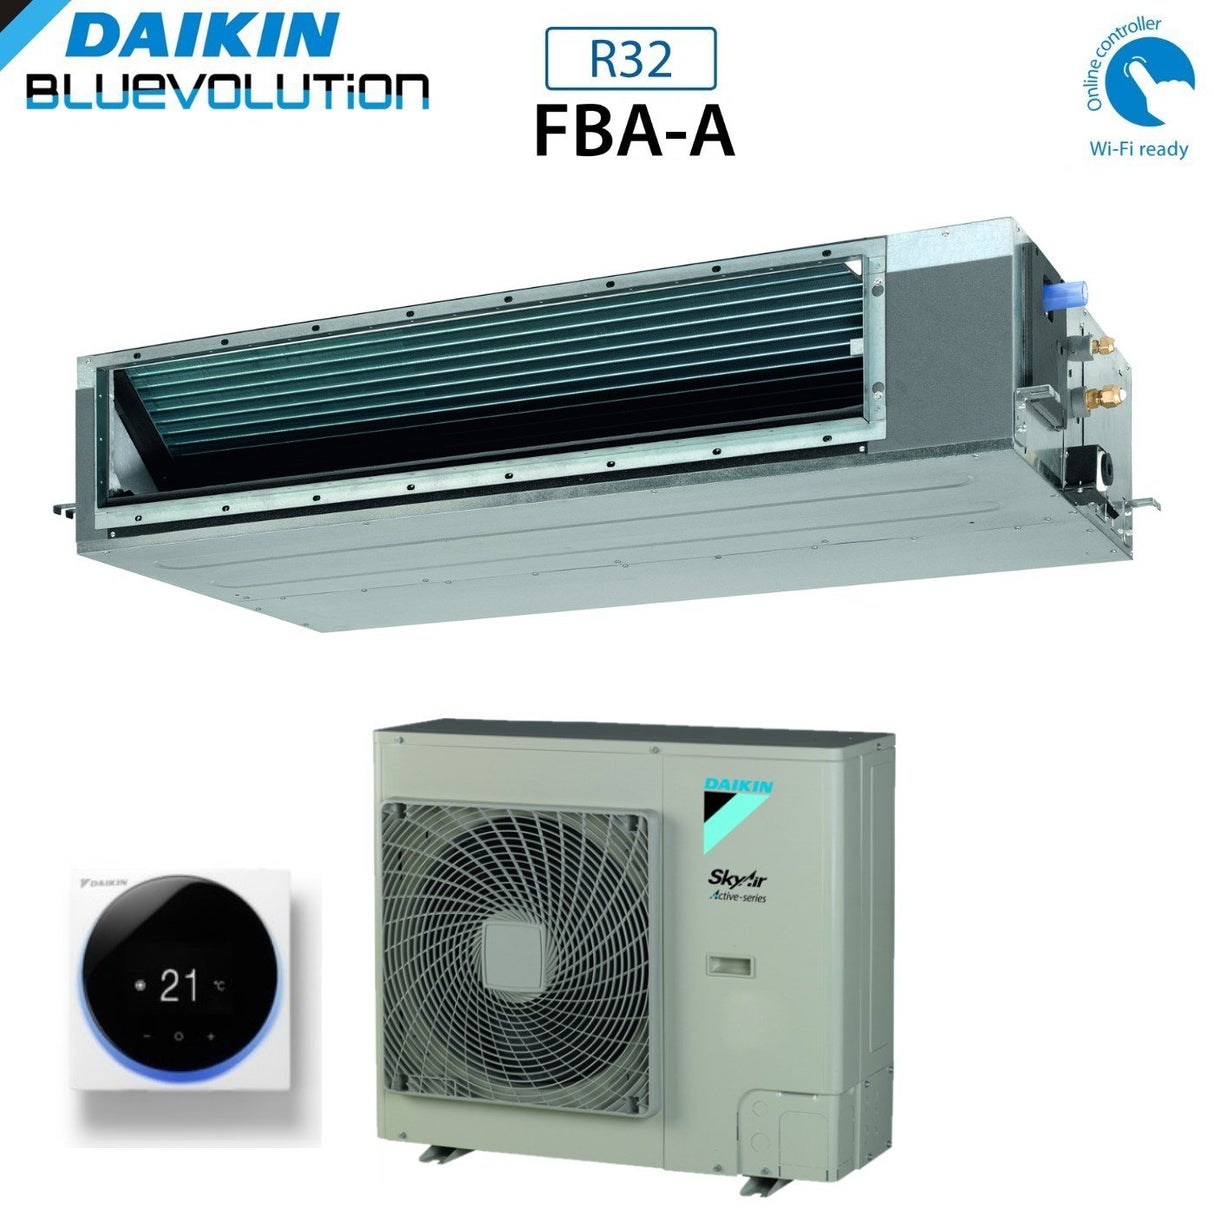 immagine-4-daikin-climatizzatore-condizionatore-daikin-bluevolution-canalizzato-canalizzabile-media-prevalenza-24000-btu-fba71a-rzasg71mv1-monofase-r-32-wi-fi-optional-con-comando-a-filo